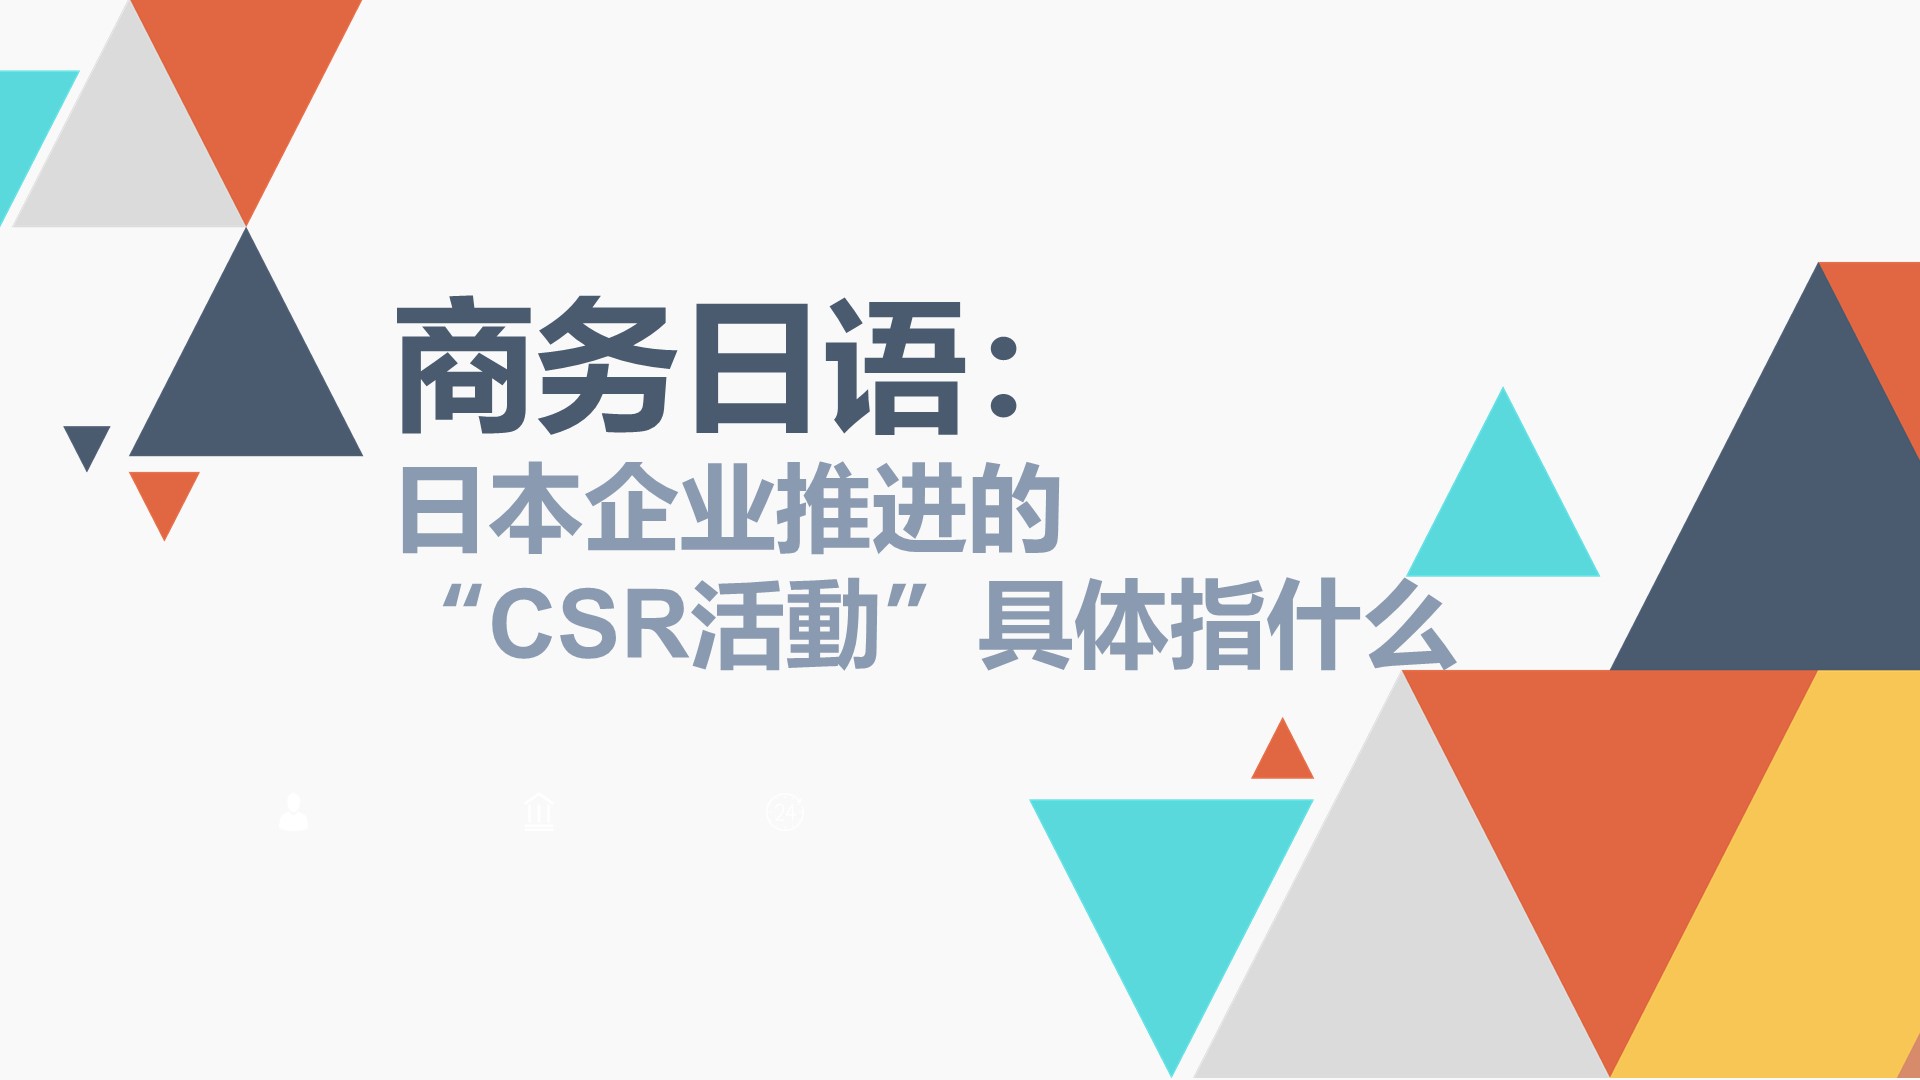 商务日语：日本企业推进的“CSR活動”具体指什么？